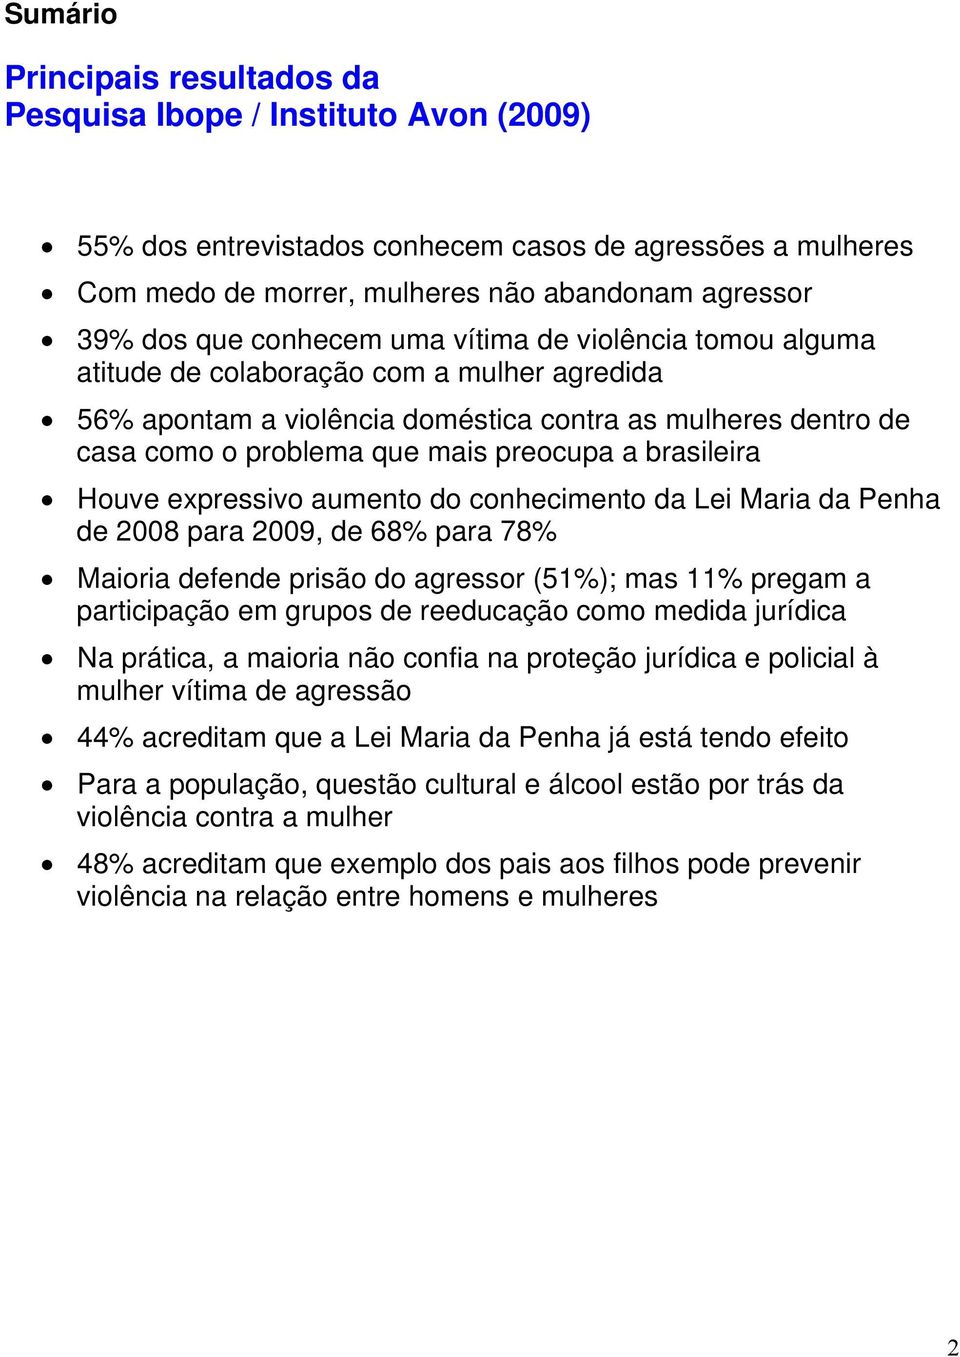 brasileira Houve expressivo aumento do conhecimento da Lei Maria da Penha de 2008 para 2009, de 68% para 78% Maioria defende prisão do agressor (51%); mas 11% pregam a participação em grupos de